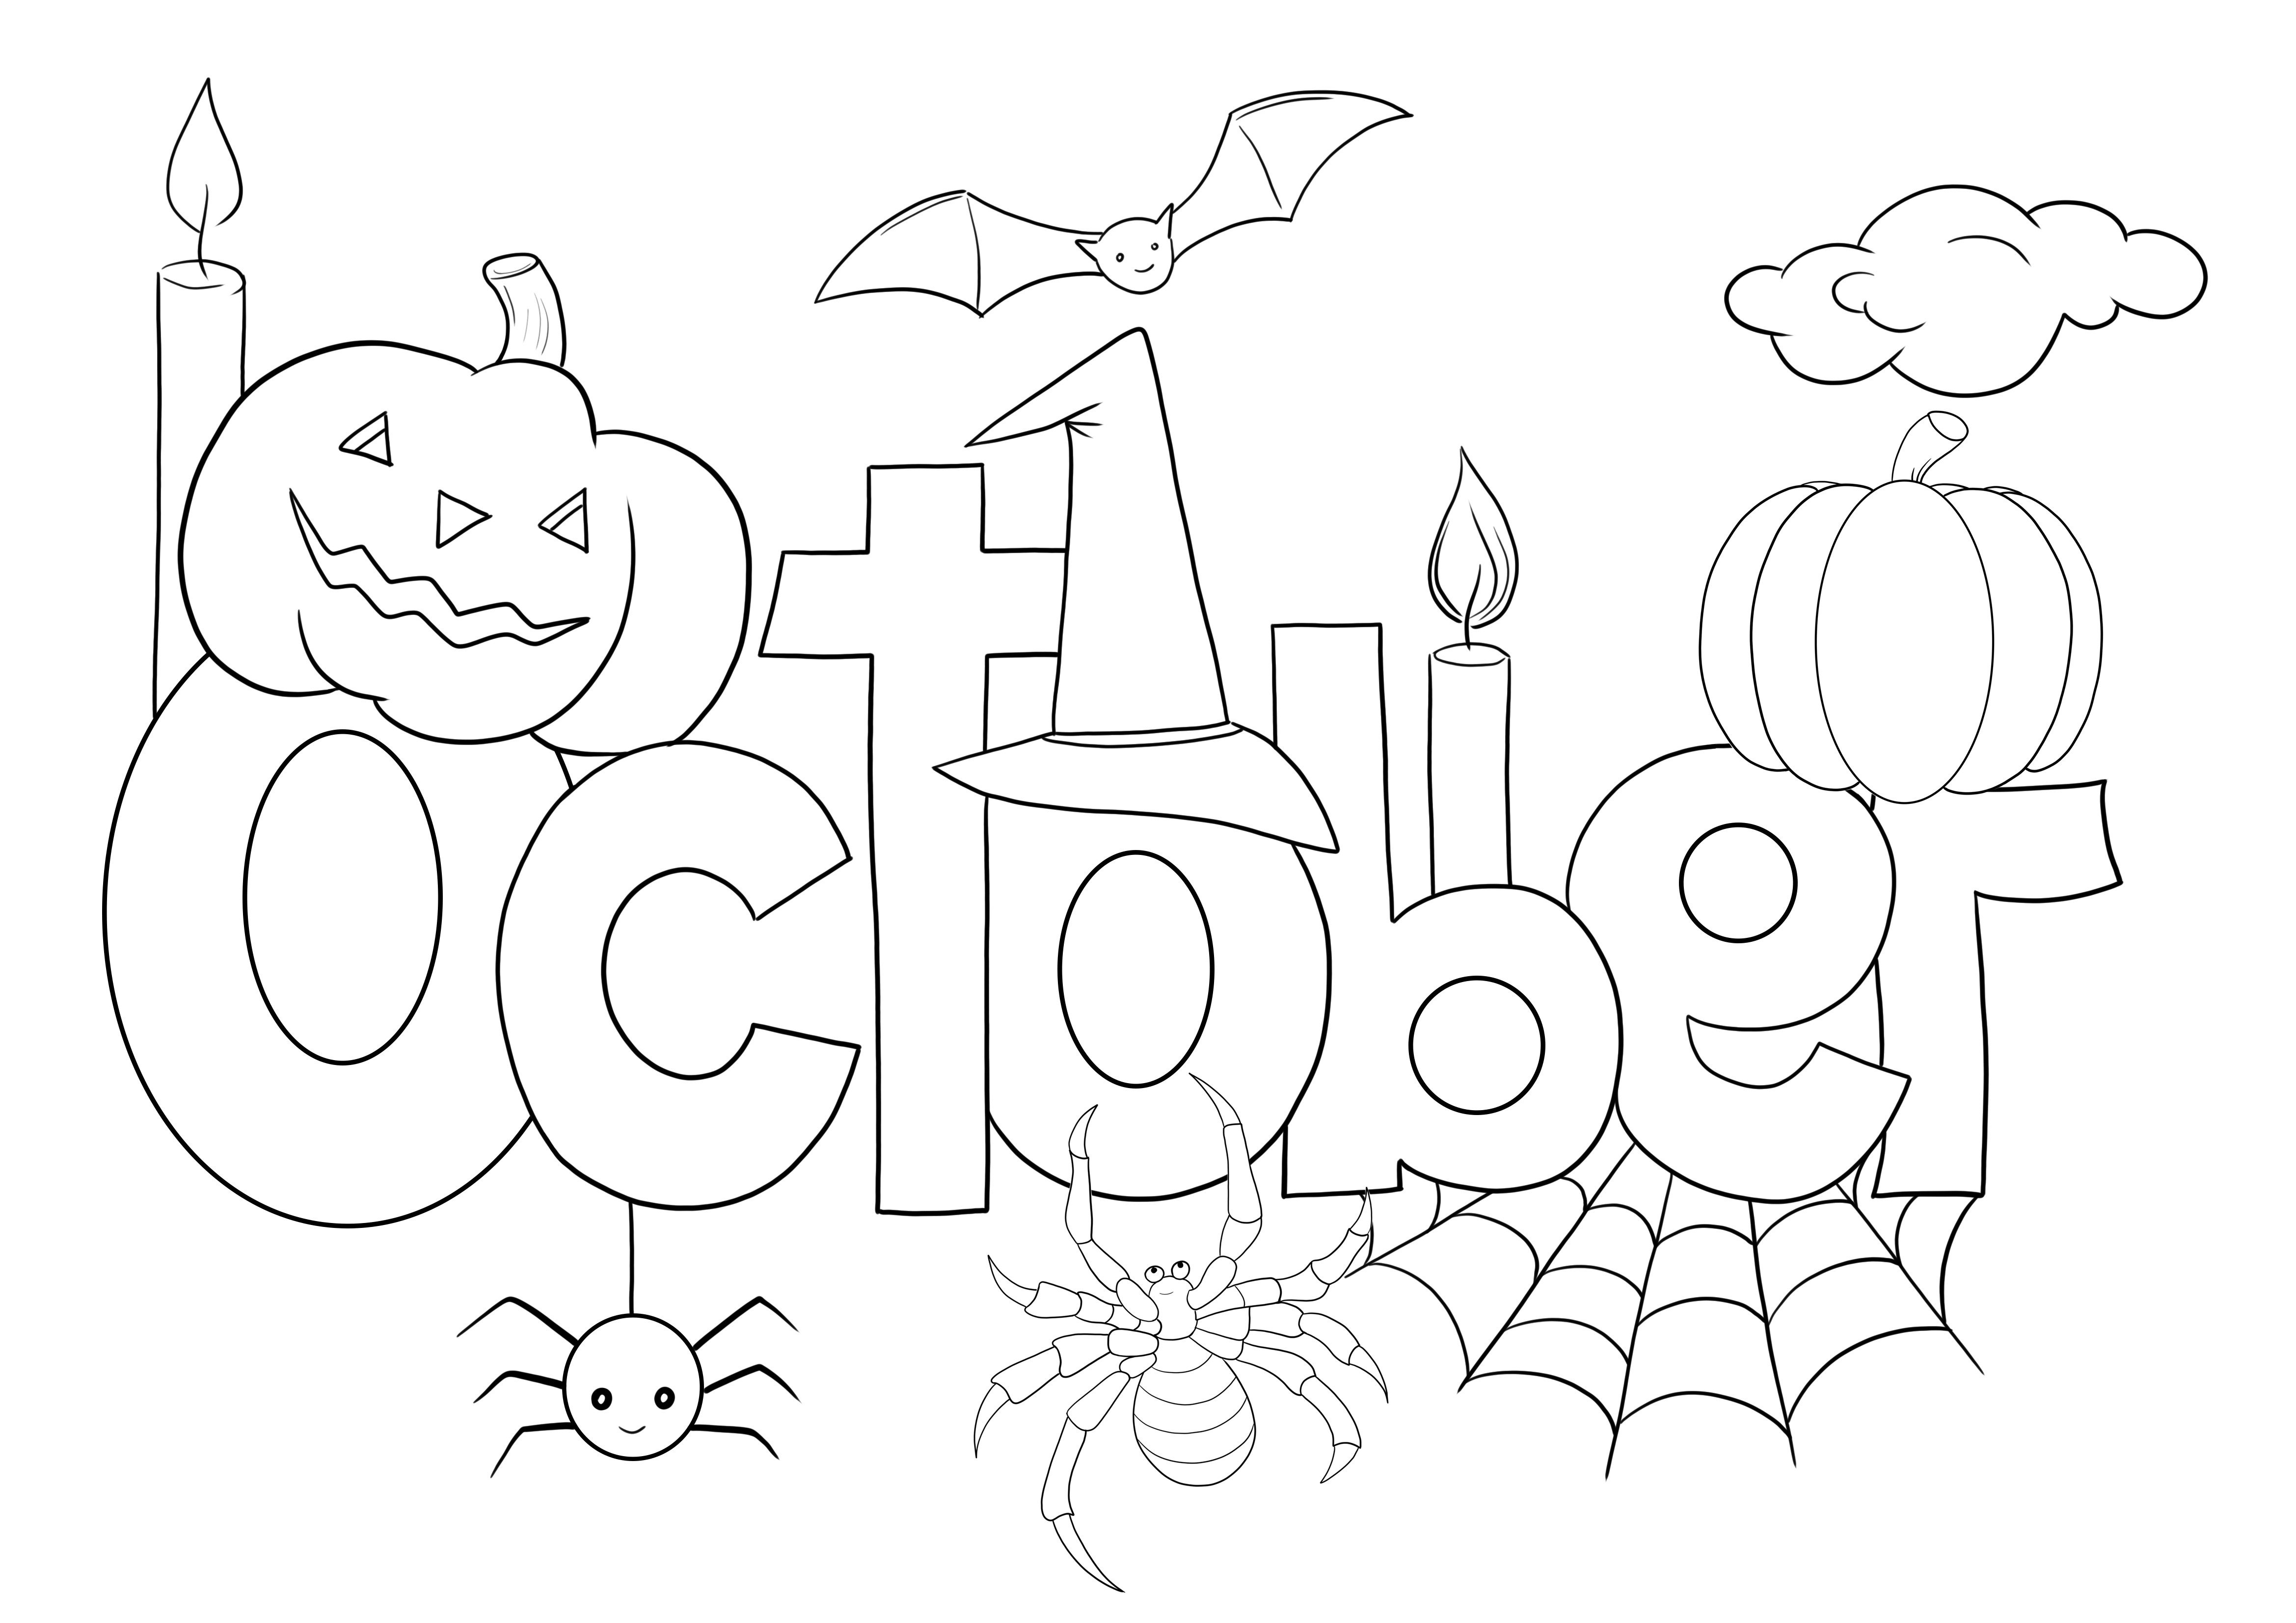 Immagine da colorare di ottobre da scaricare e colorare gratuitamente